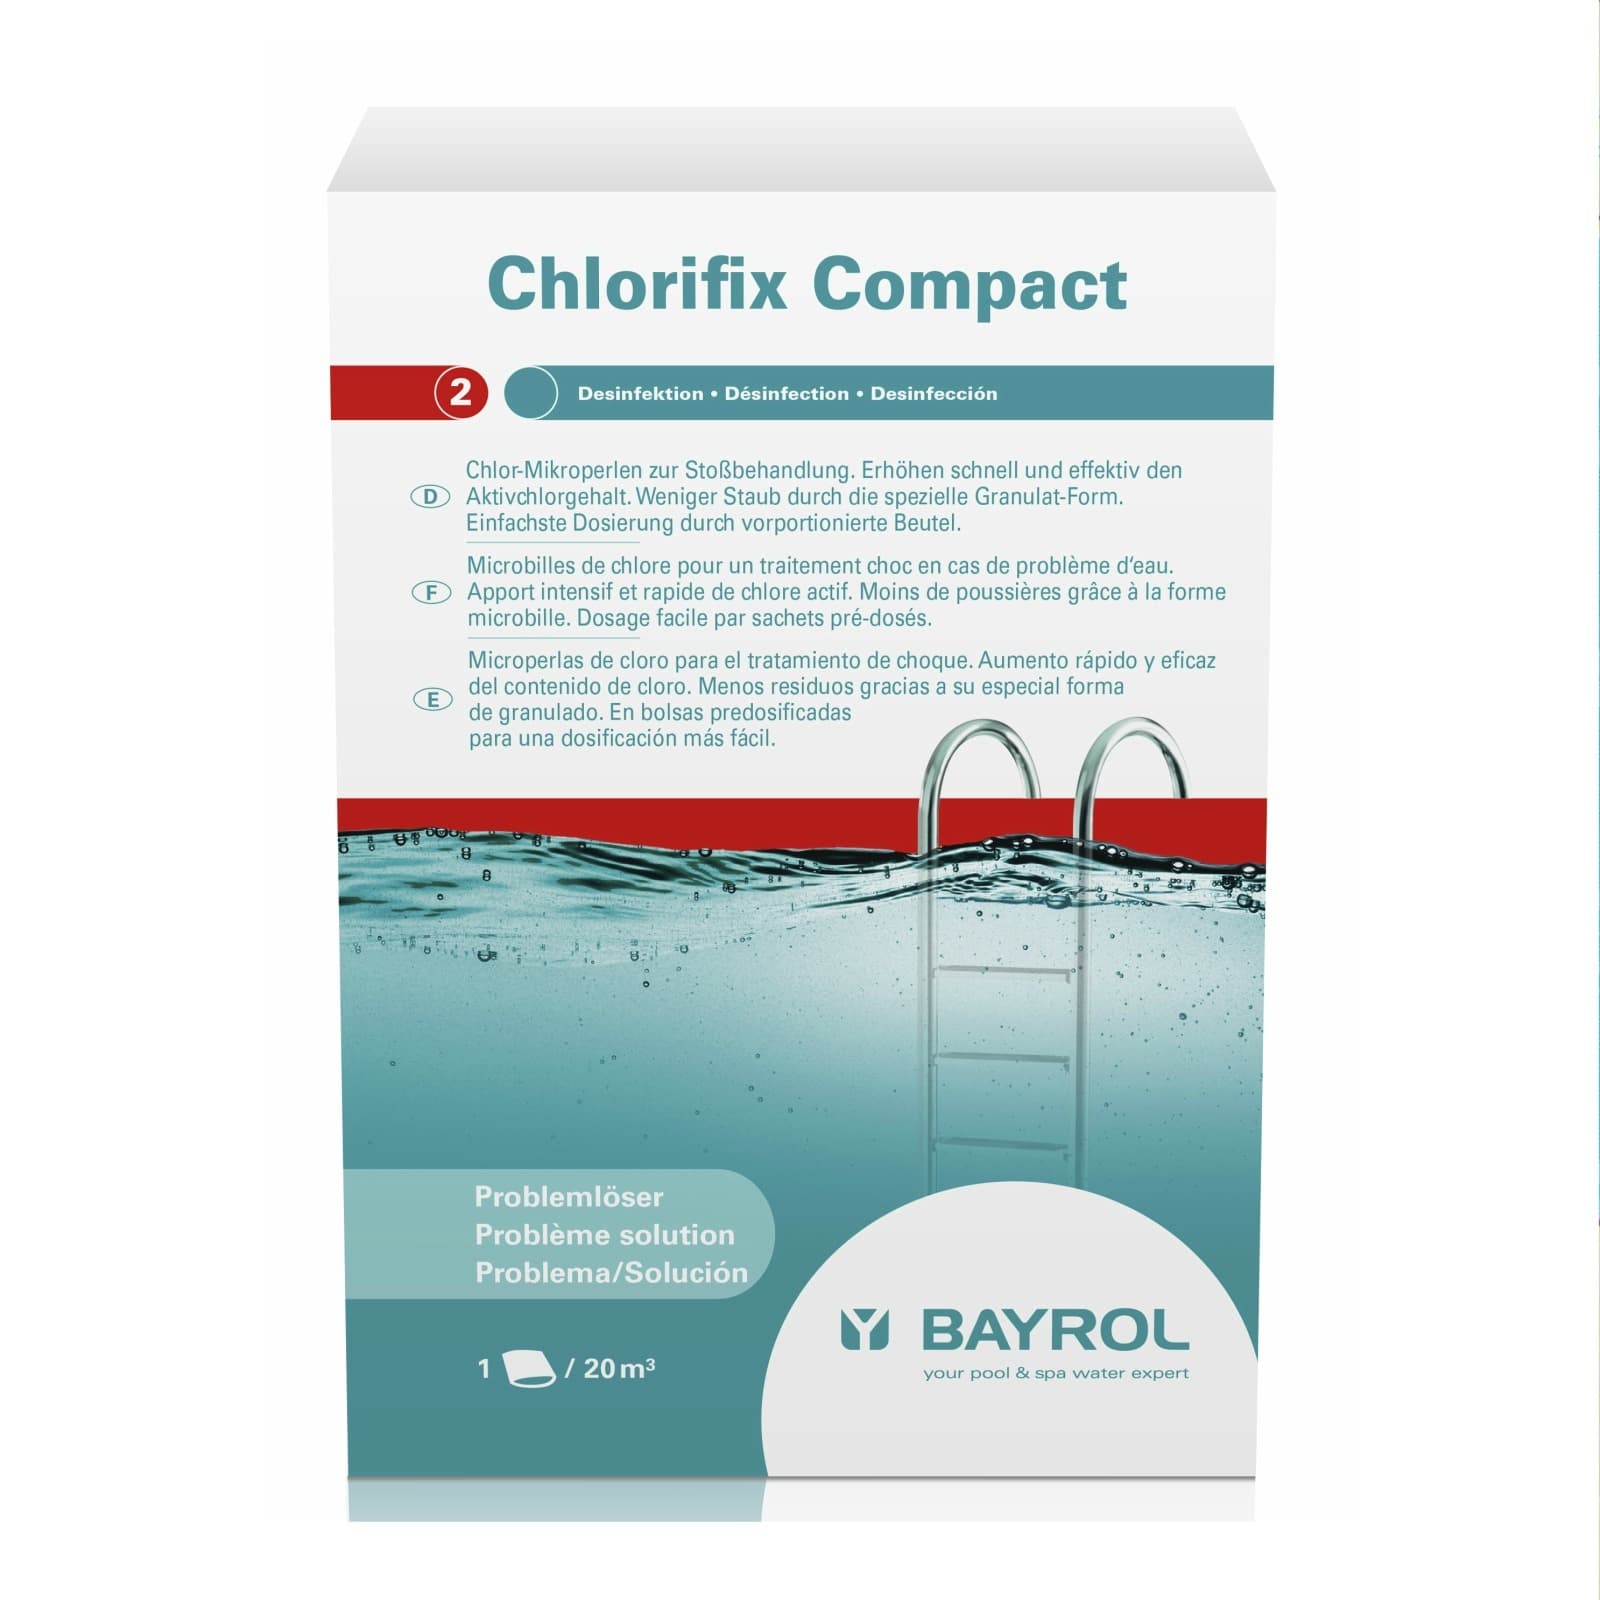 Chlorifix Compakt